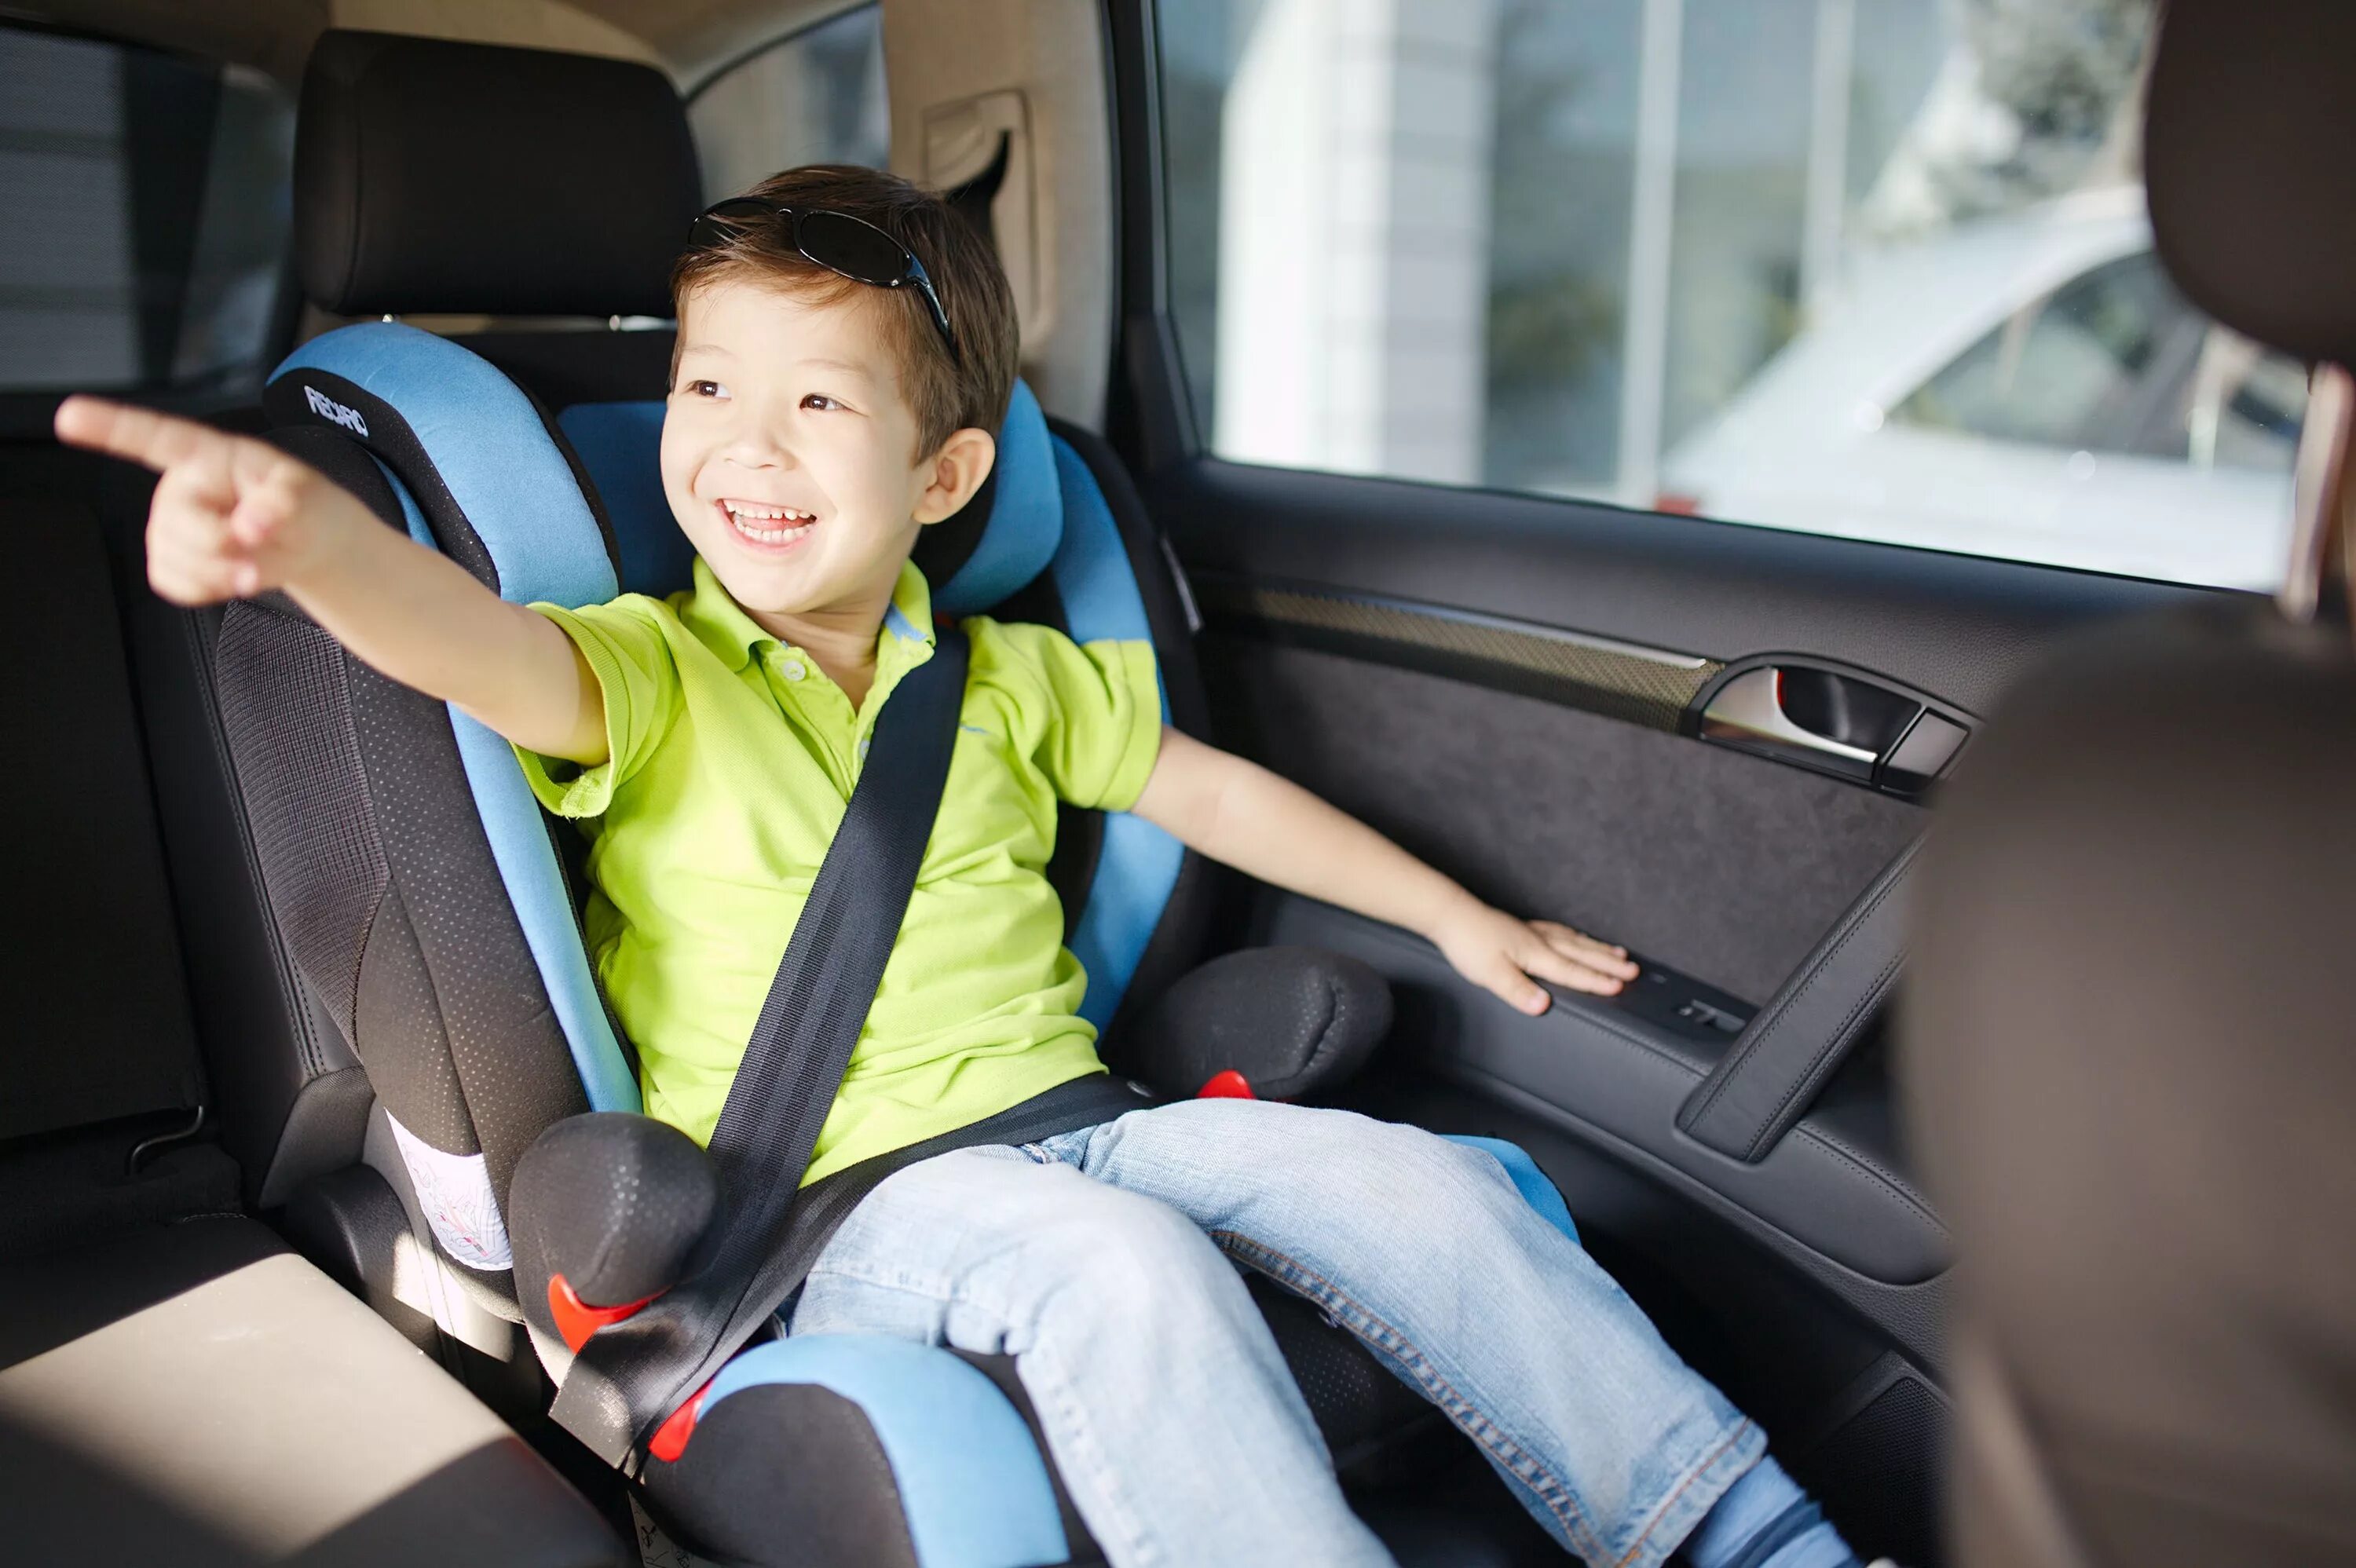 Бустер такси ребенок. Recaro child Safety. Ребенок в автокресле. Автомобиль для детей. Ребенок в автокресле в машине.